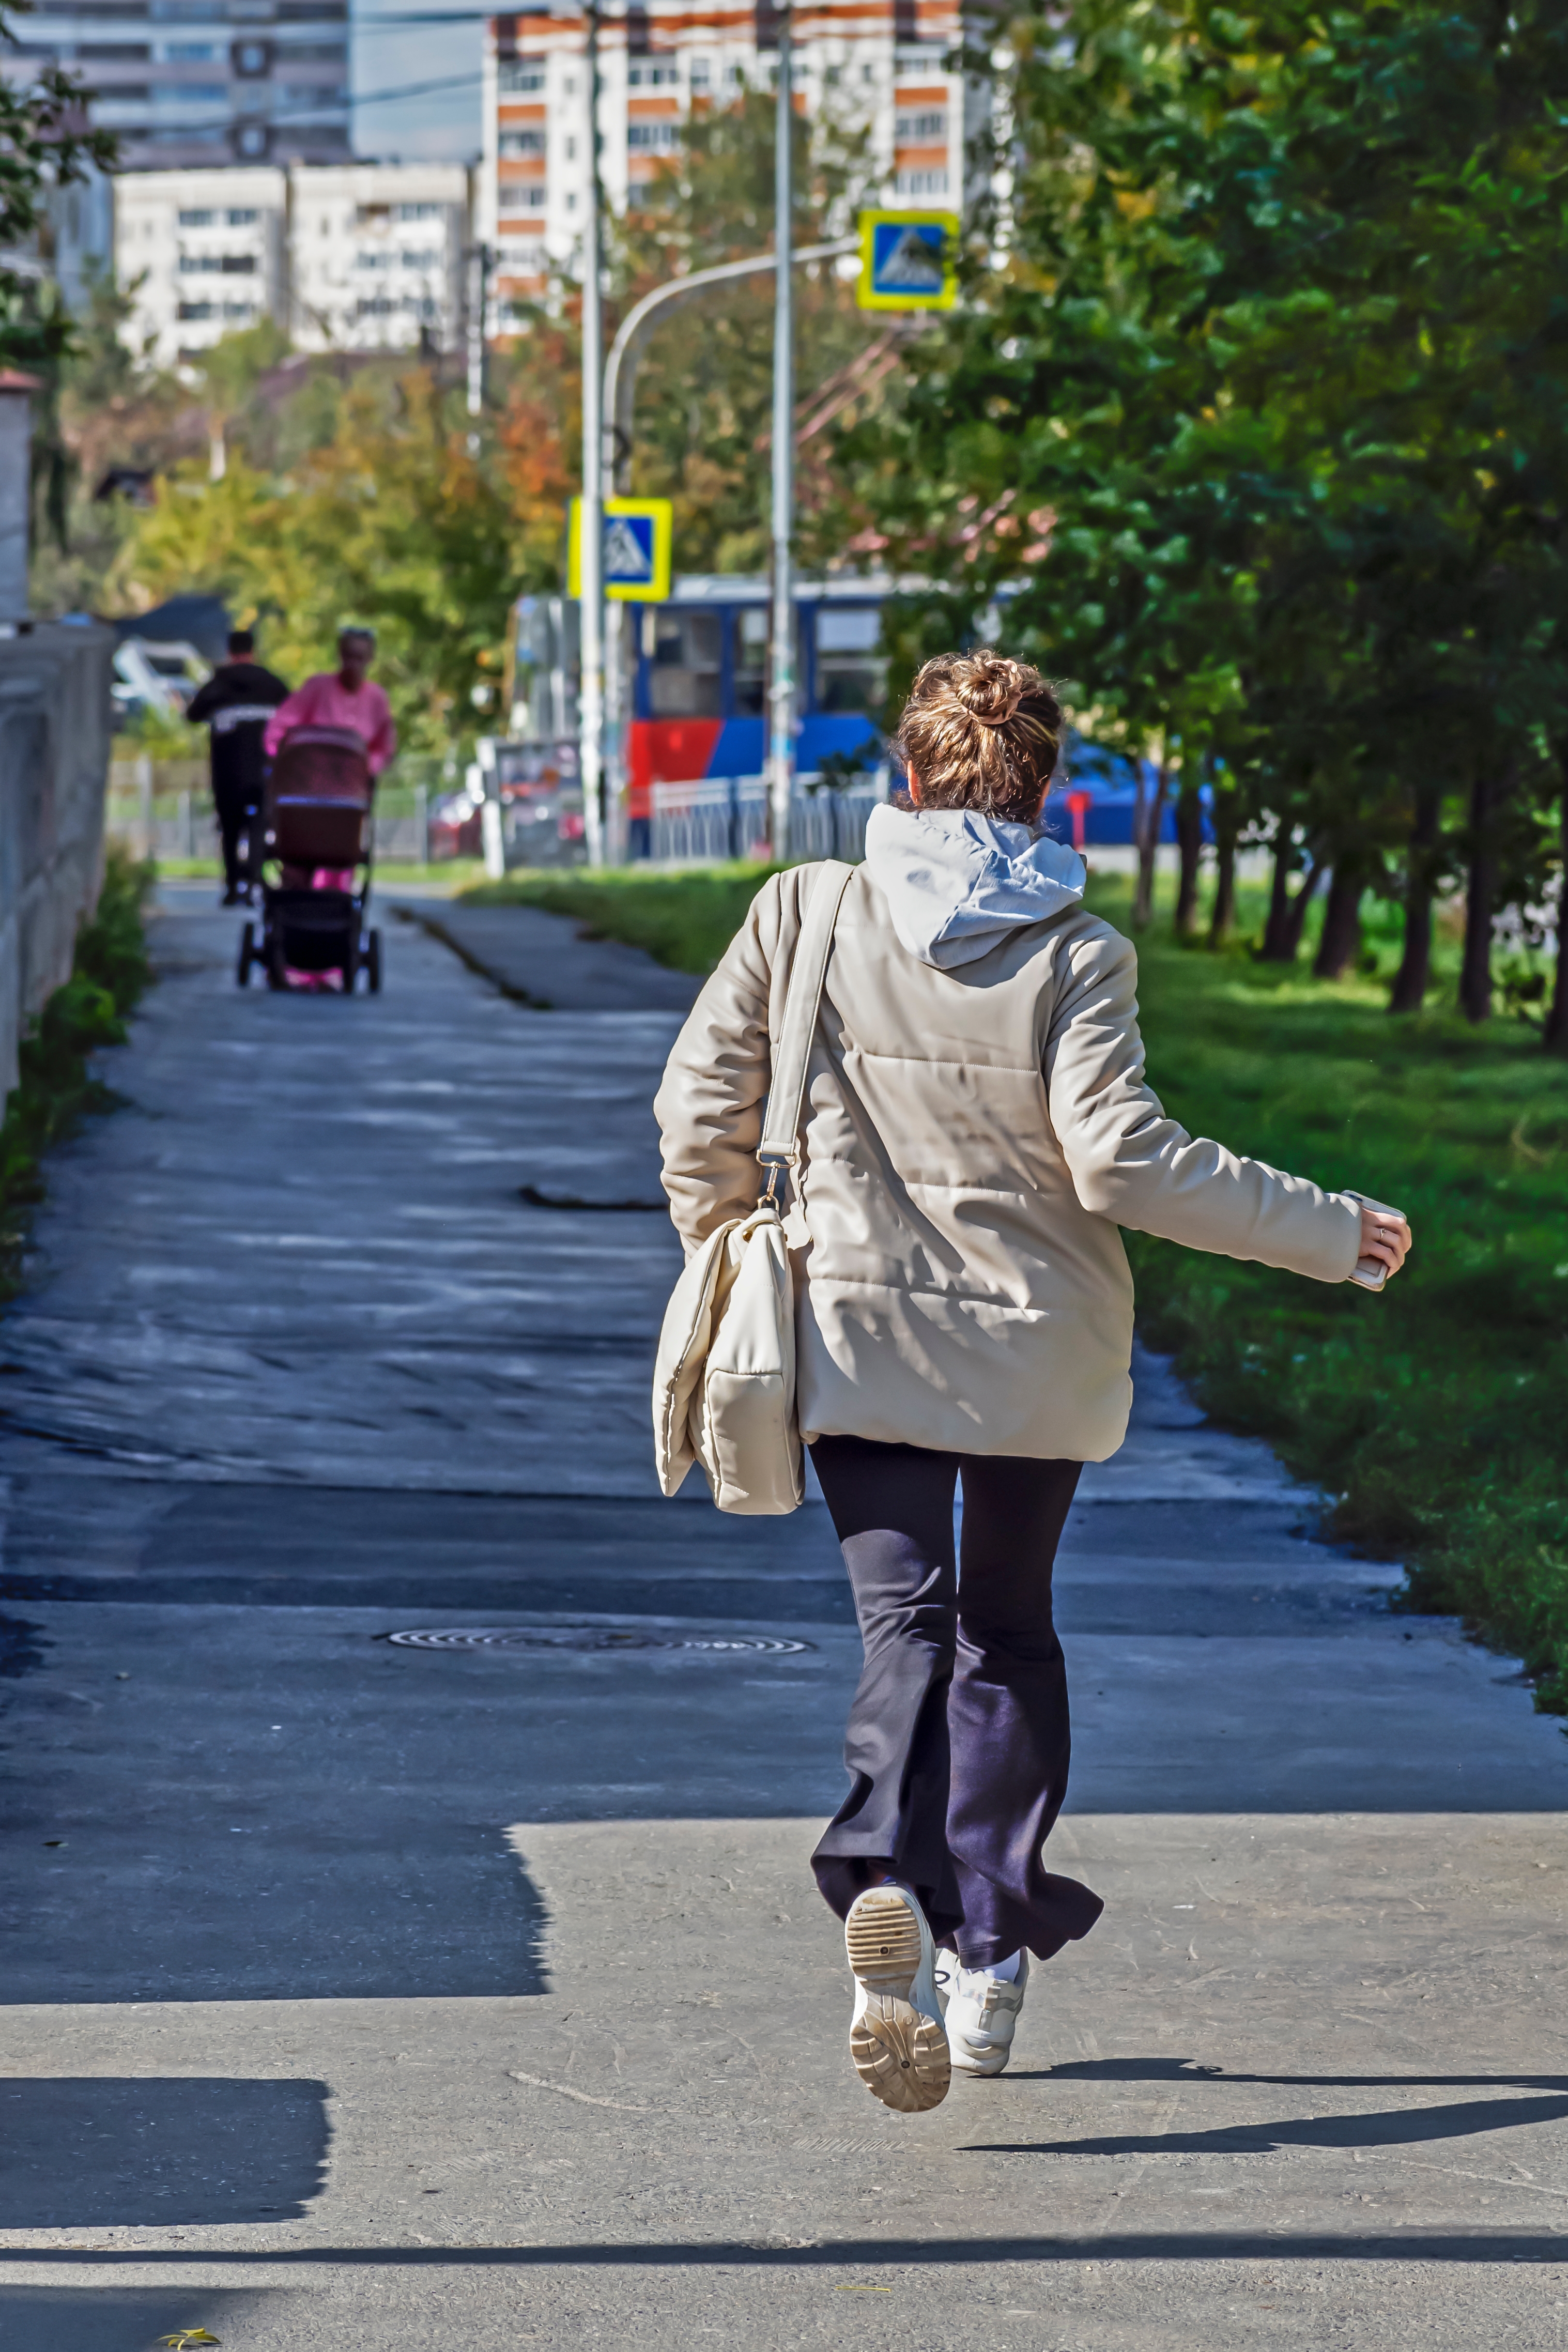 A woman runs along the sidewalk on an autumn day. | Source: Shutterstock